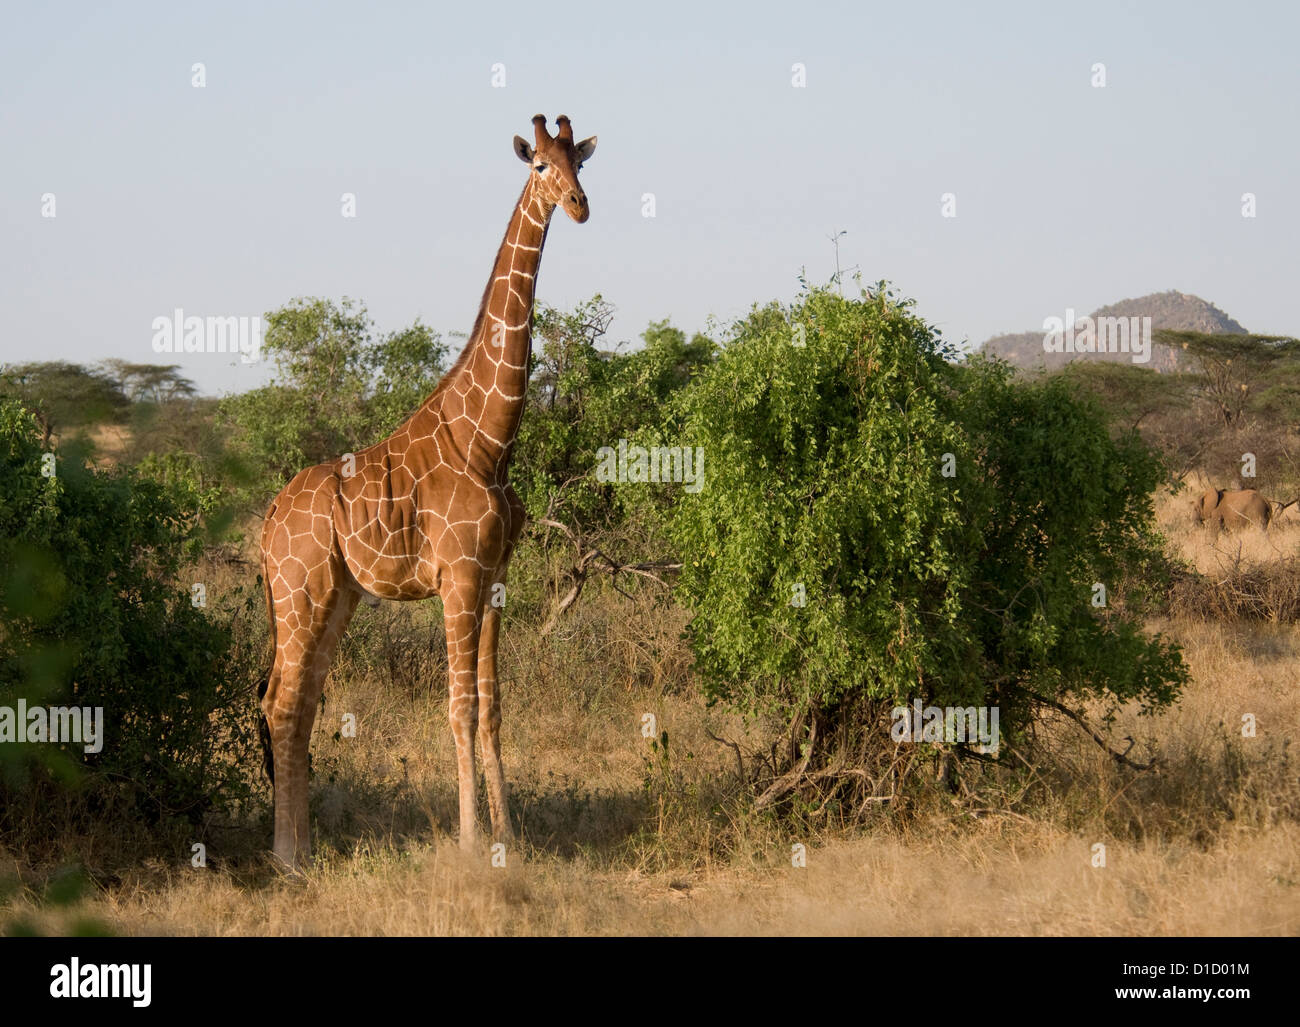 Reticulated giraffe standing Stock Photo